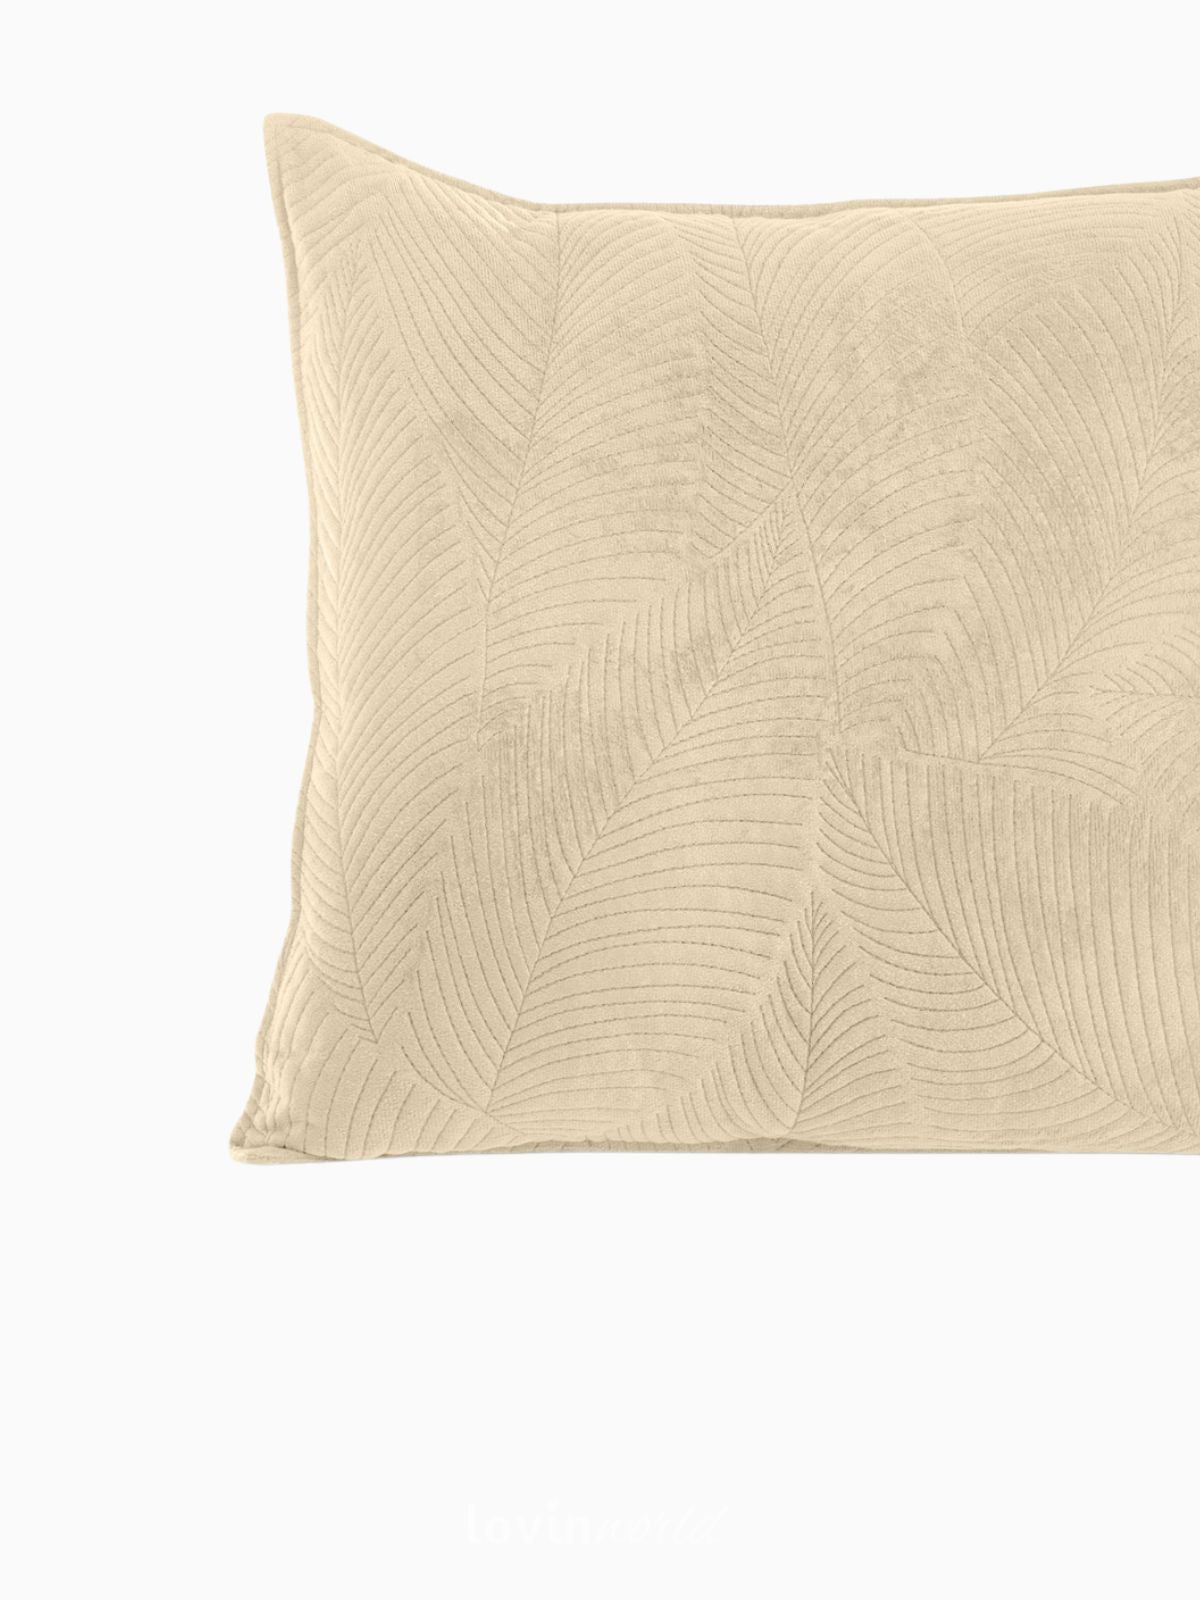 Cuscino decorativo in velluto Palsha, colore beige scuro 45x45 cm.-4